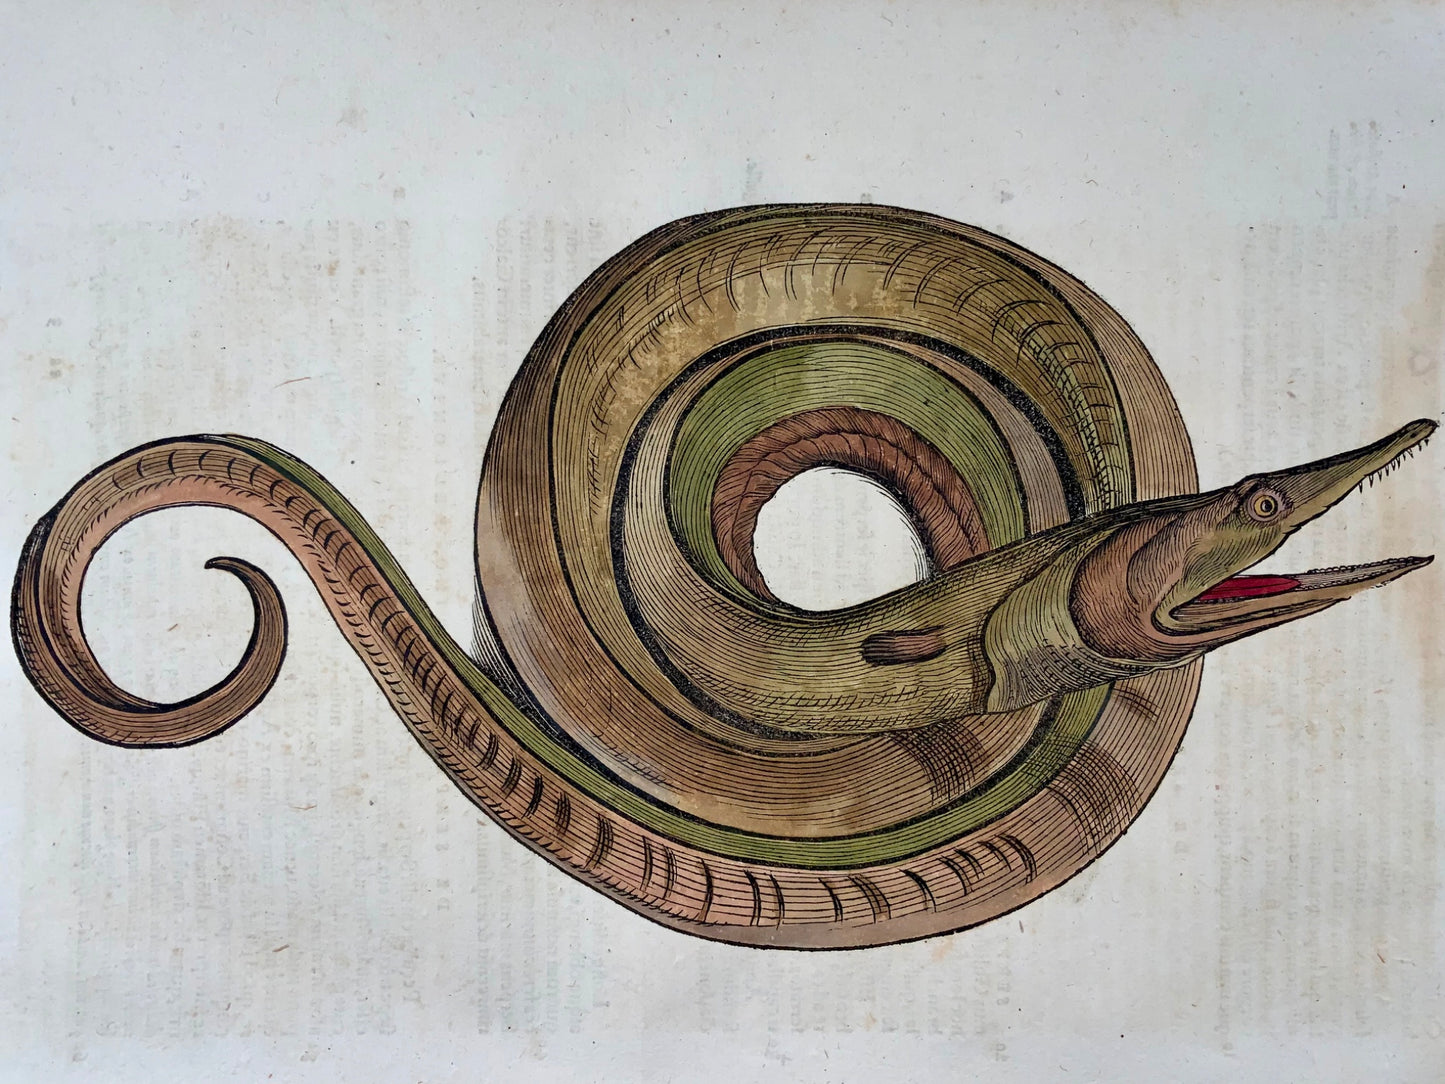 1558 Serpente marino, Conrad Gesner, xilografia in folio, colorata a mano, Primo Stato